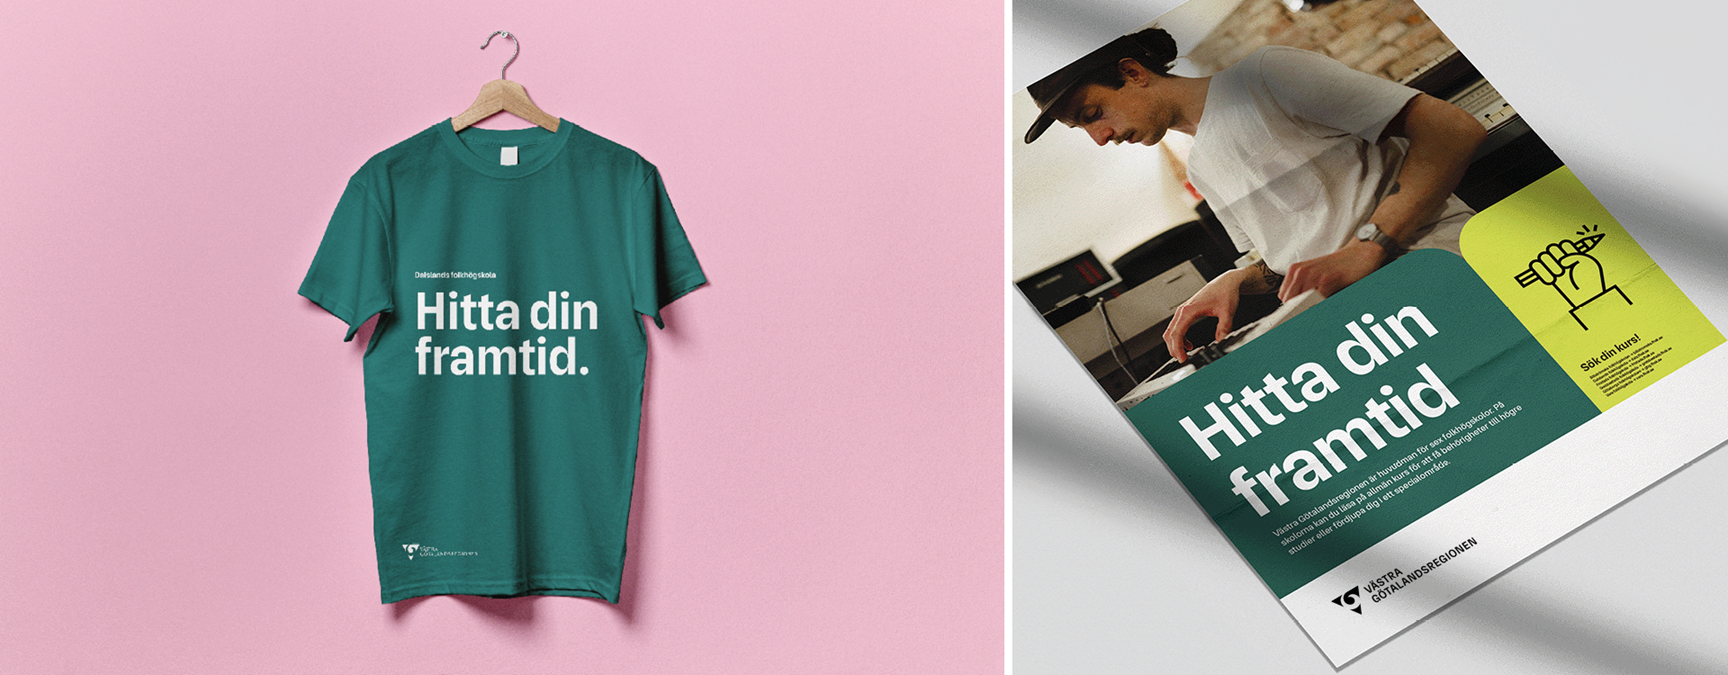 Grön t-shirt och folder med texten Hitta din framtid